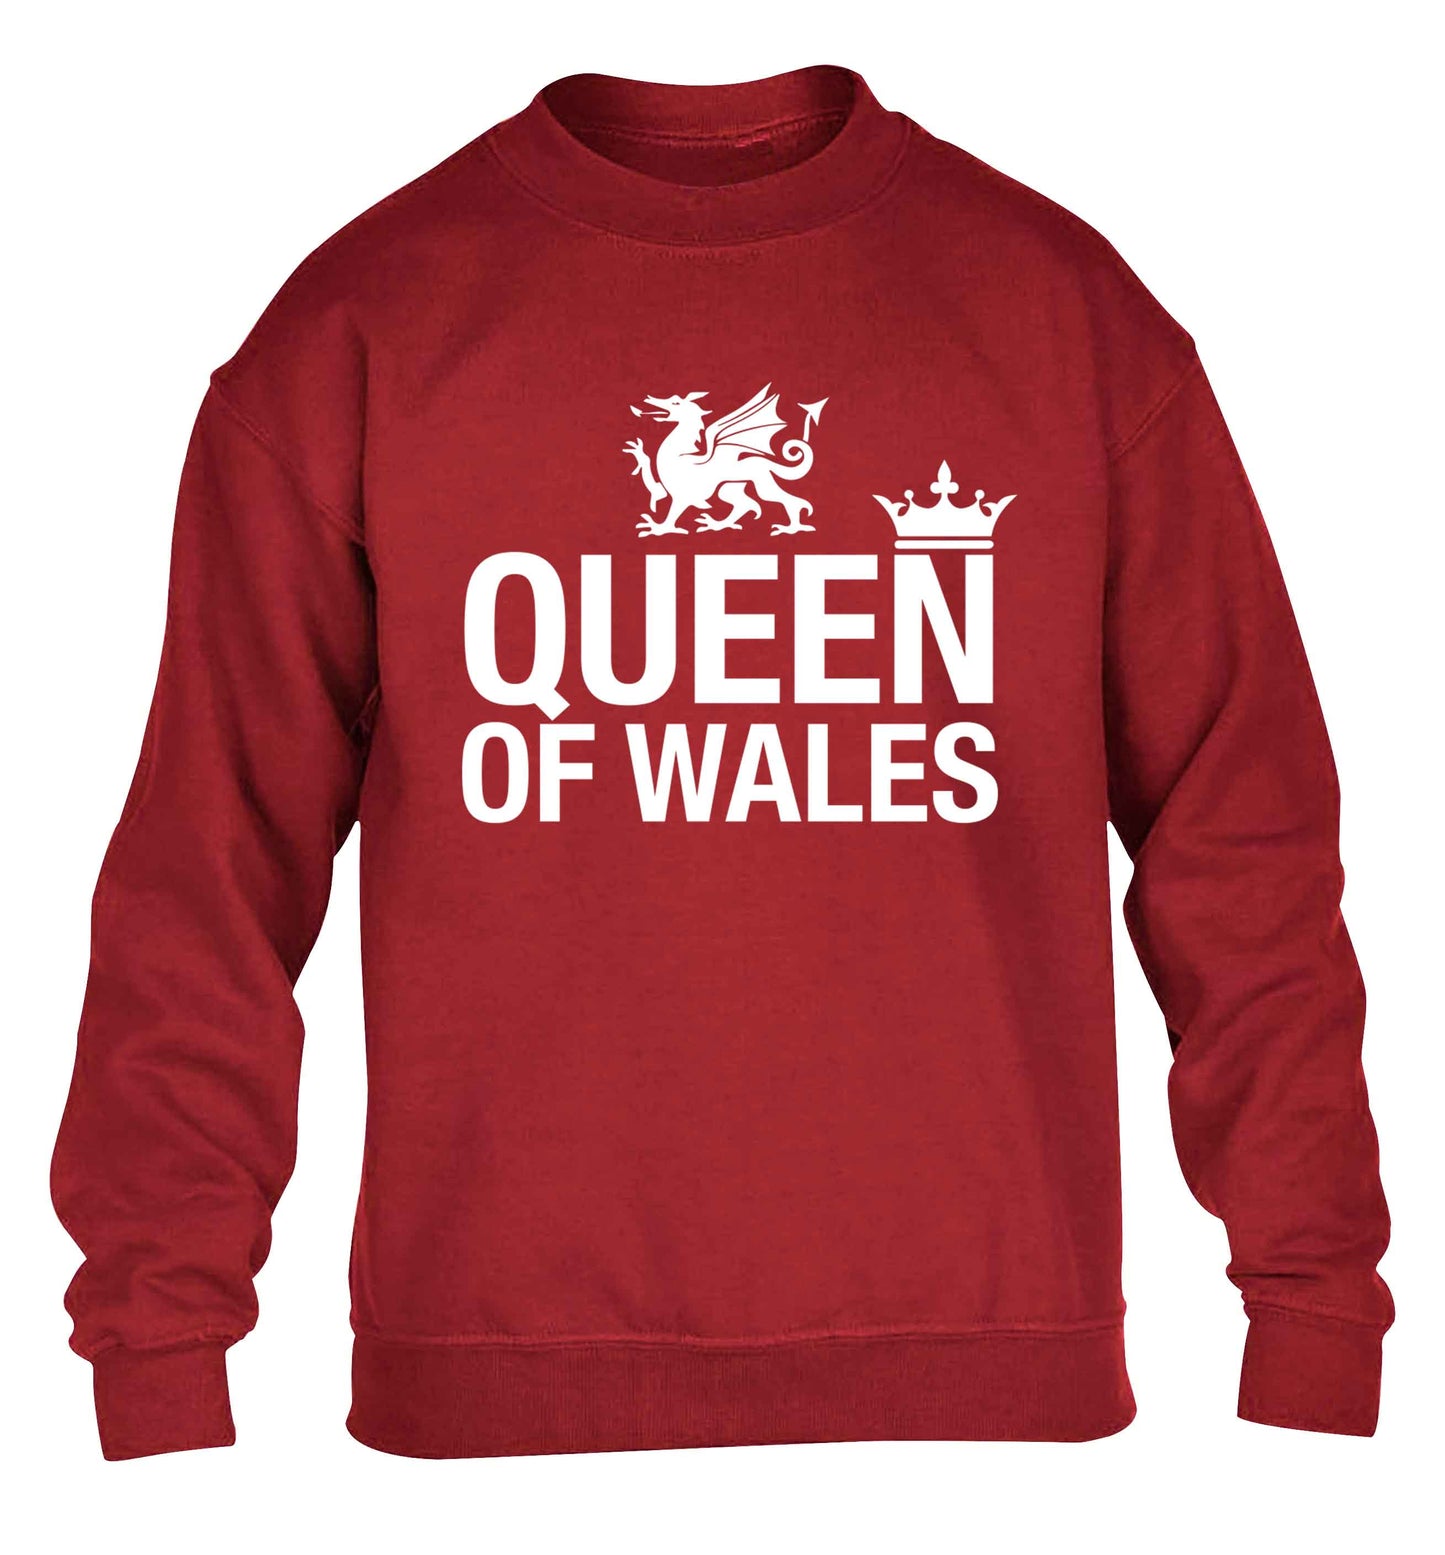 Queen of Wales children's grey sweater 12-13 Years